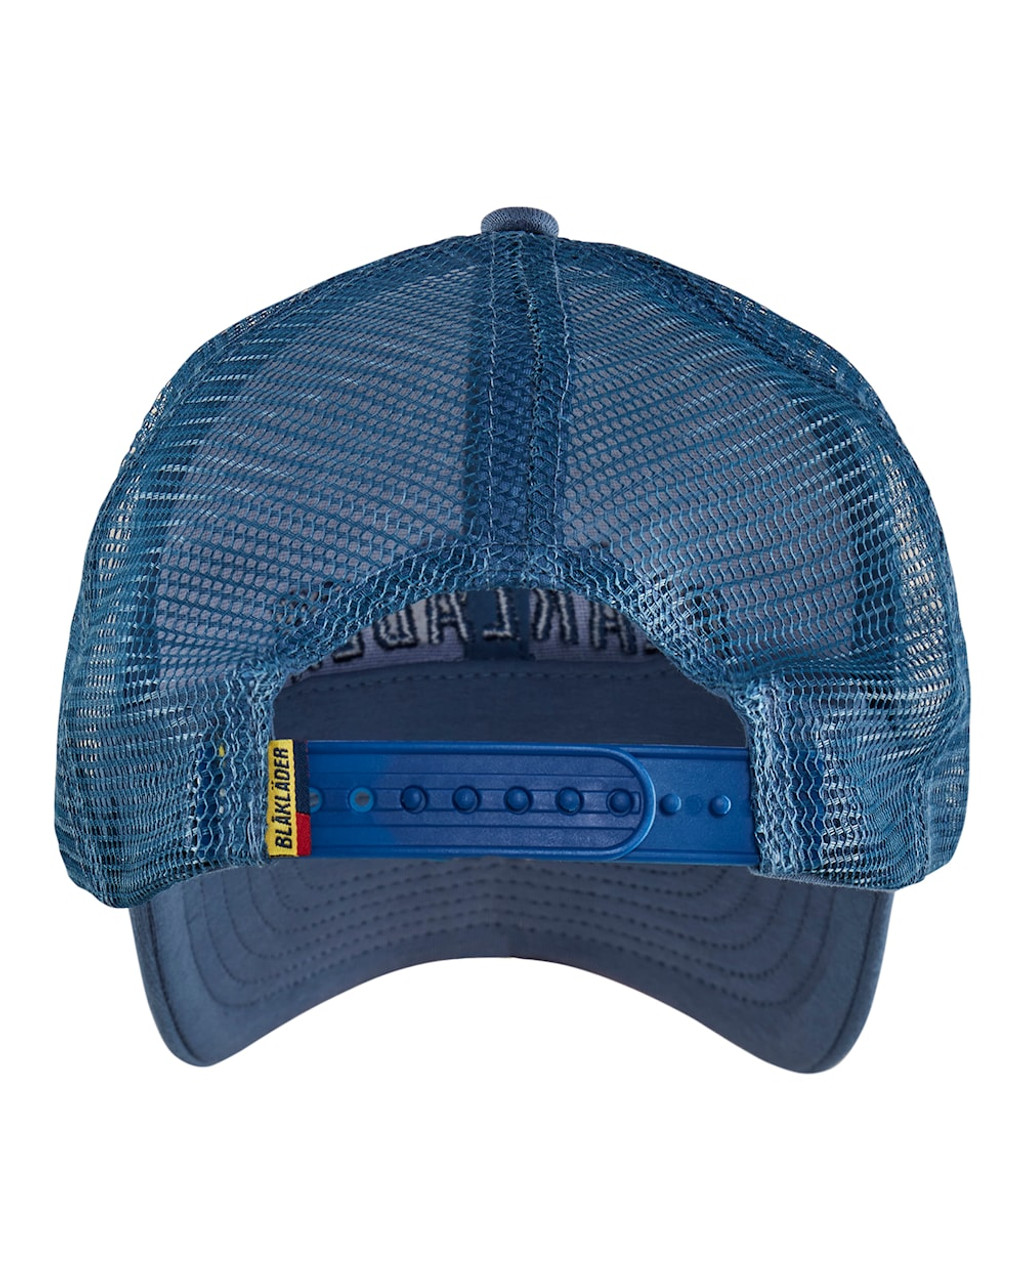 BLAKLADER Headwear | 2075 Numb Blue Headwear Trucker Cap with Logo